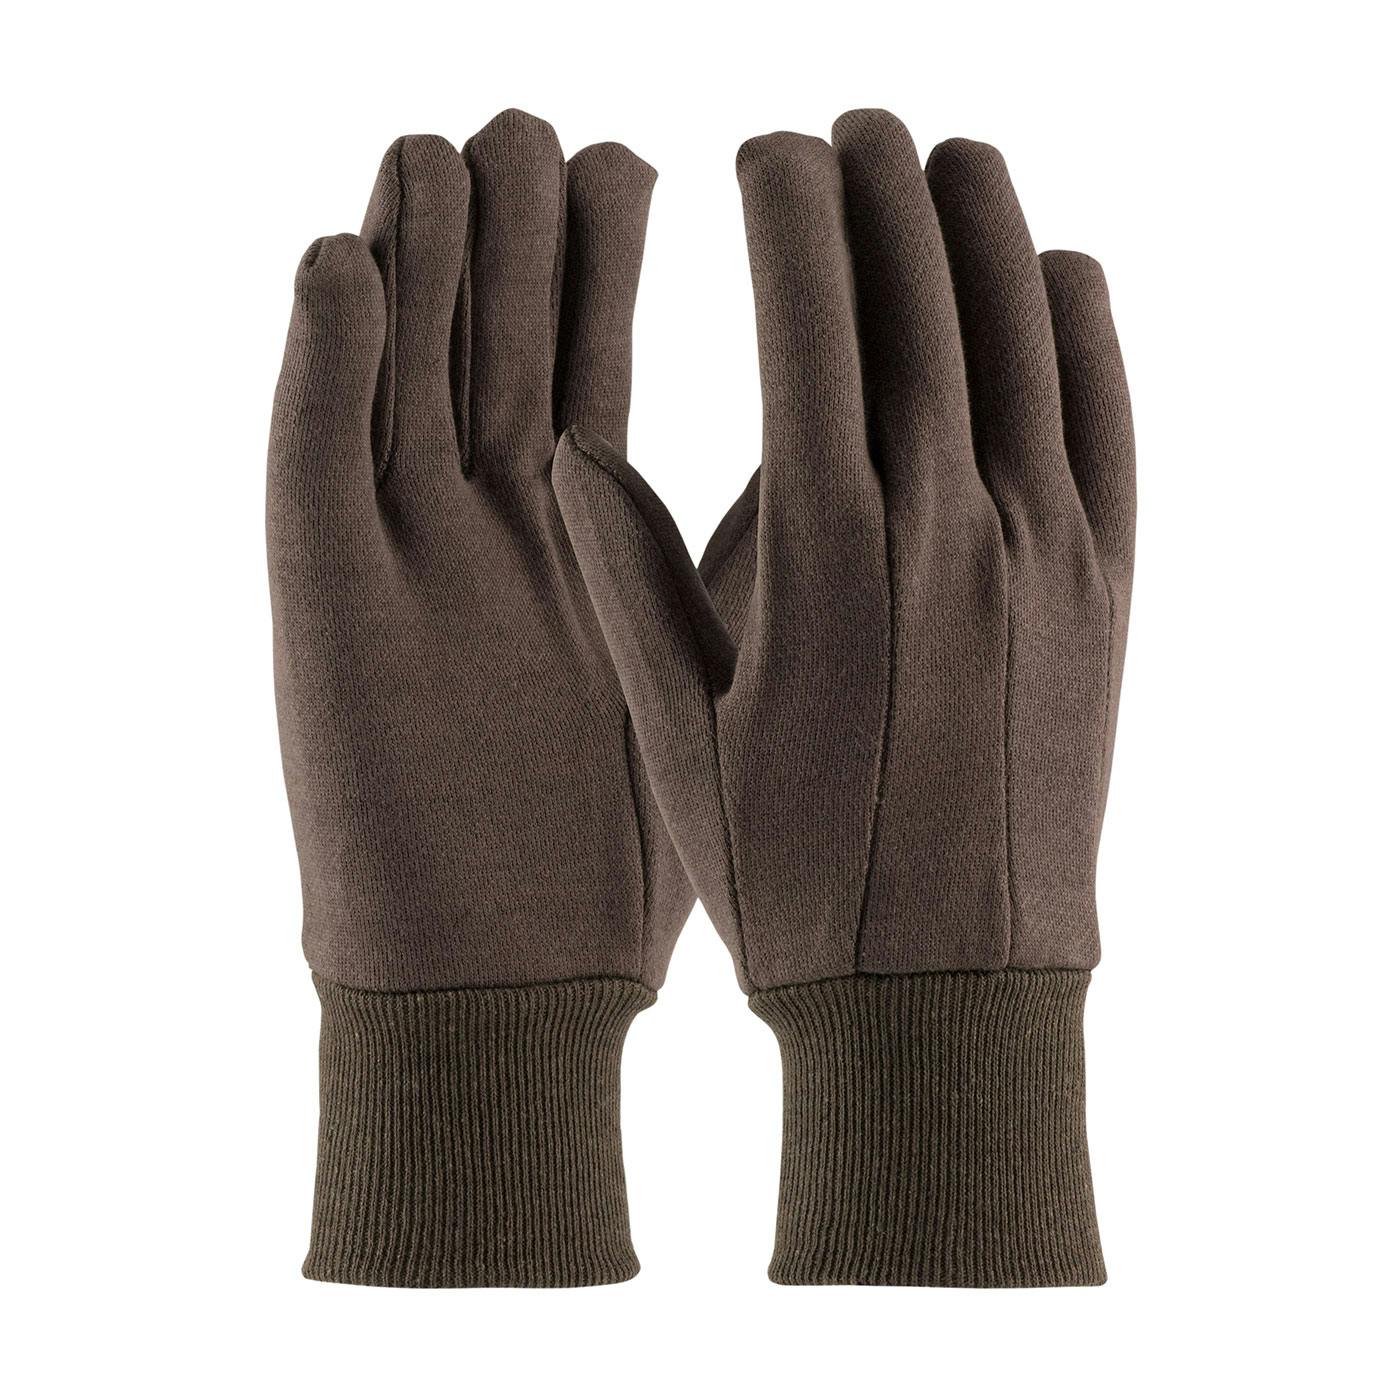 Heavy Weight Cotton/Polyester Jersey Glove - Ladies', Brown (KBJ9LI) - LADIES